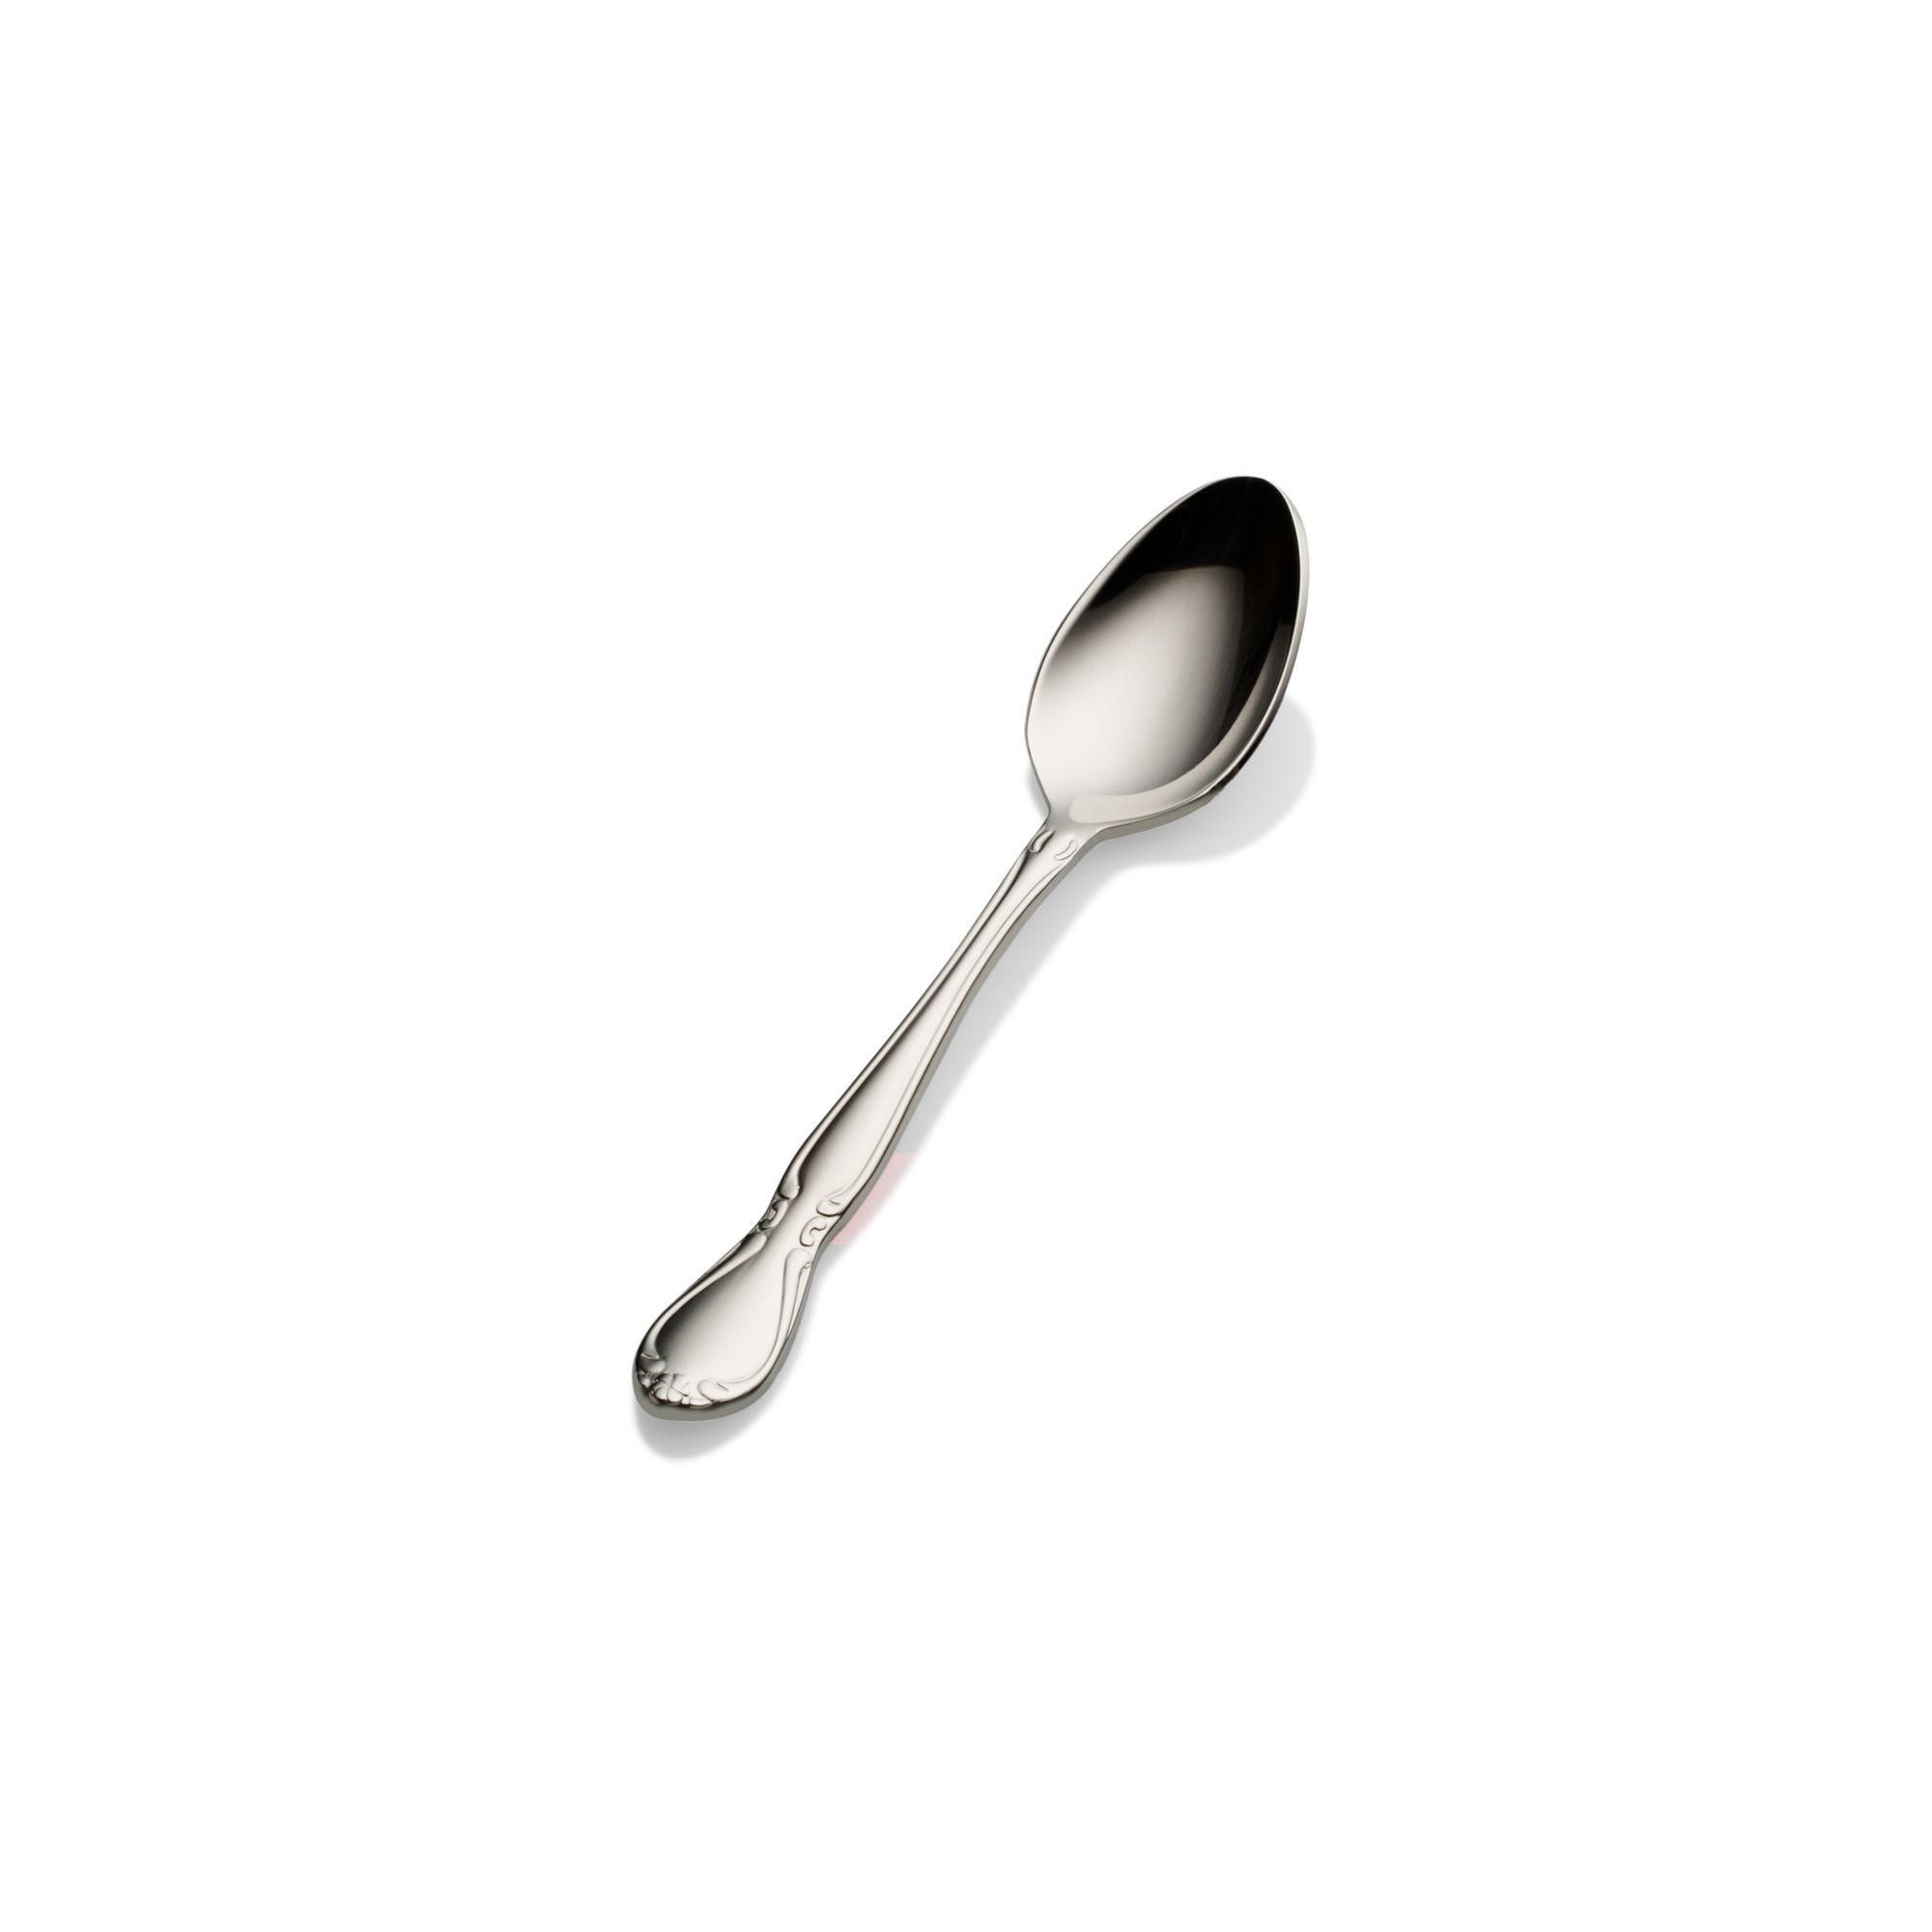 Bon Chef S1816 Queen Anne 18/8 Stainless Steel Demitasse Spoon